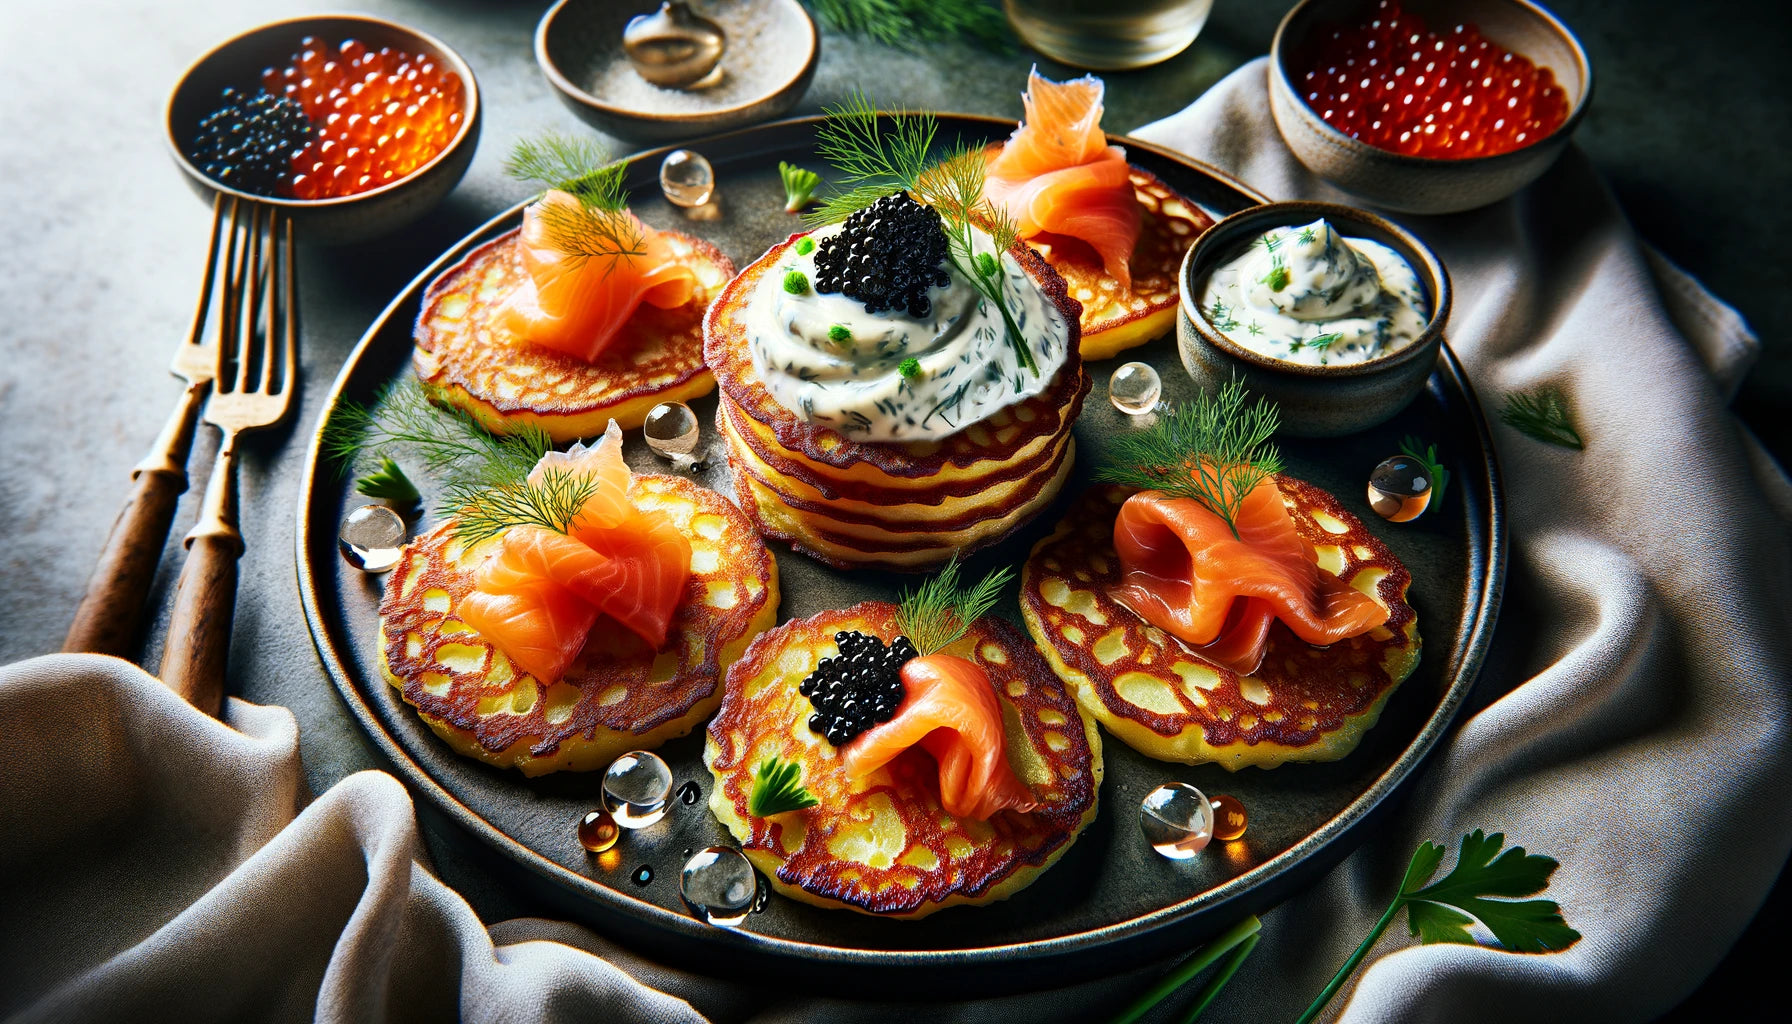 Potato Pancakes with Smoked Salmon, Caviar, and Dill Cream